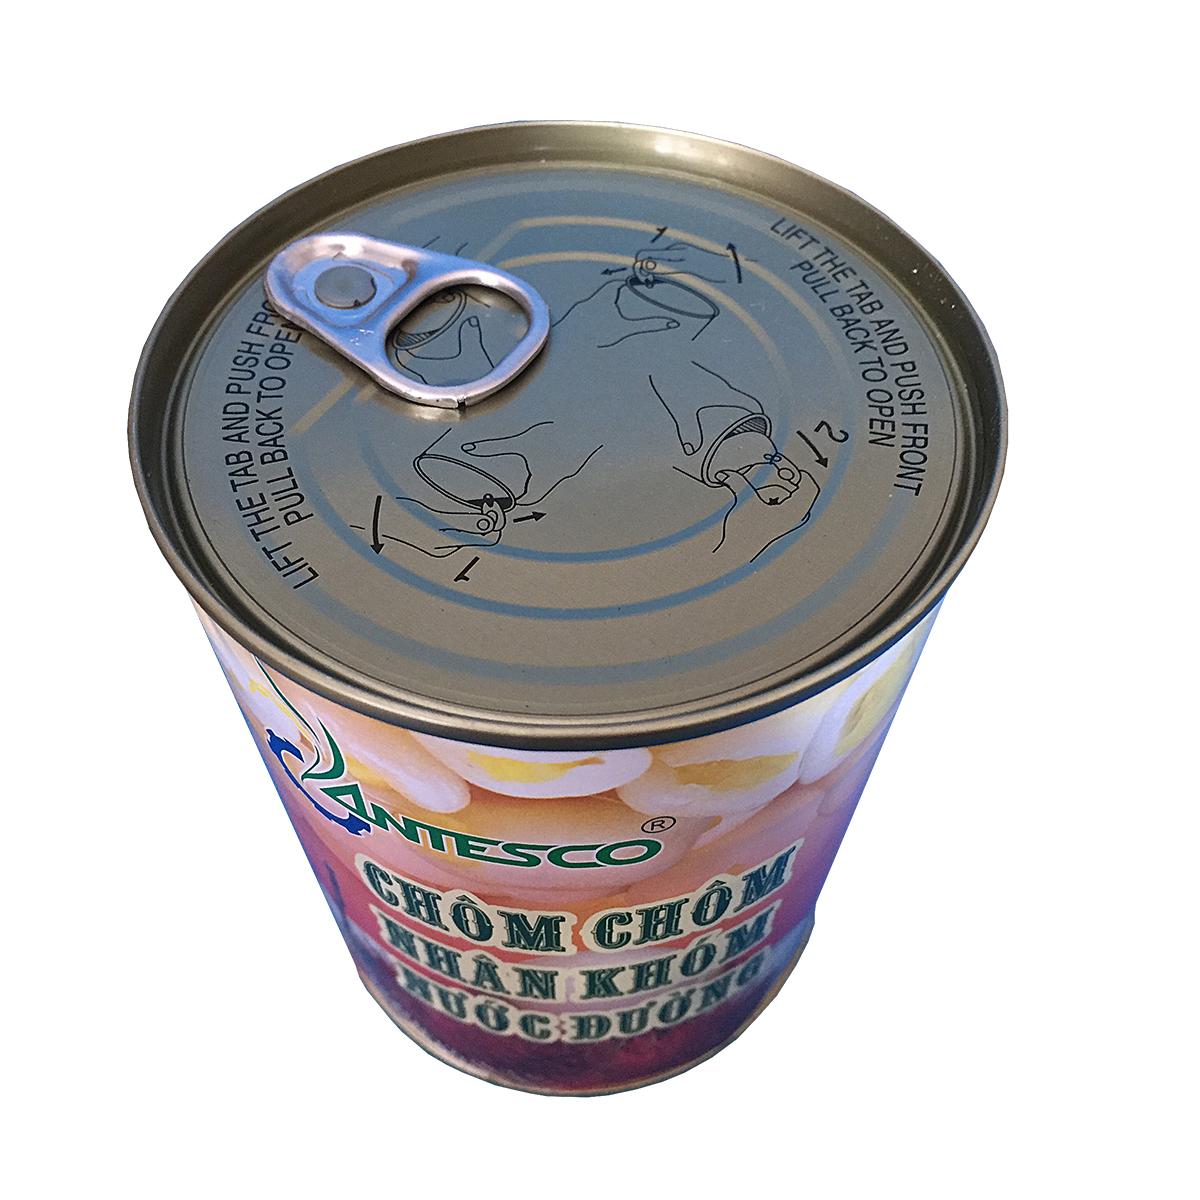 [HCM]Chôm chôm nhân khớm nước đường (565gr) - Chôm chôm đóng hộp - Chôm chôm đóng lon - Nước trái cây giải khát - Thương hiệu Antesco